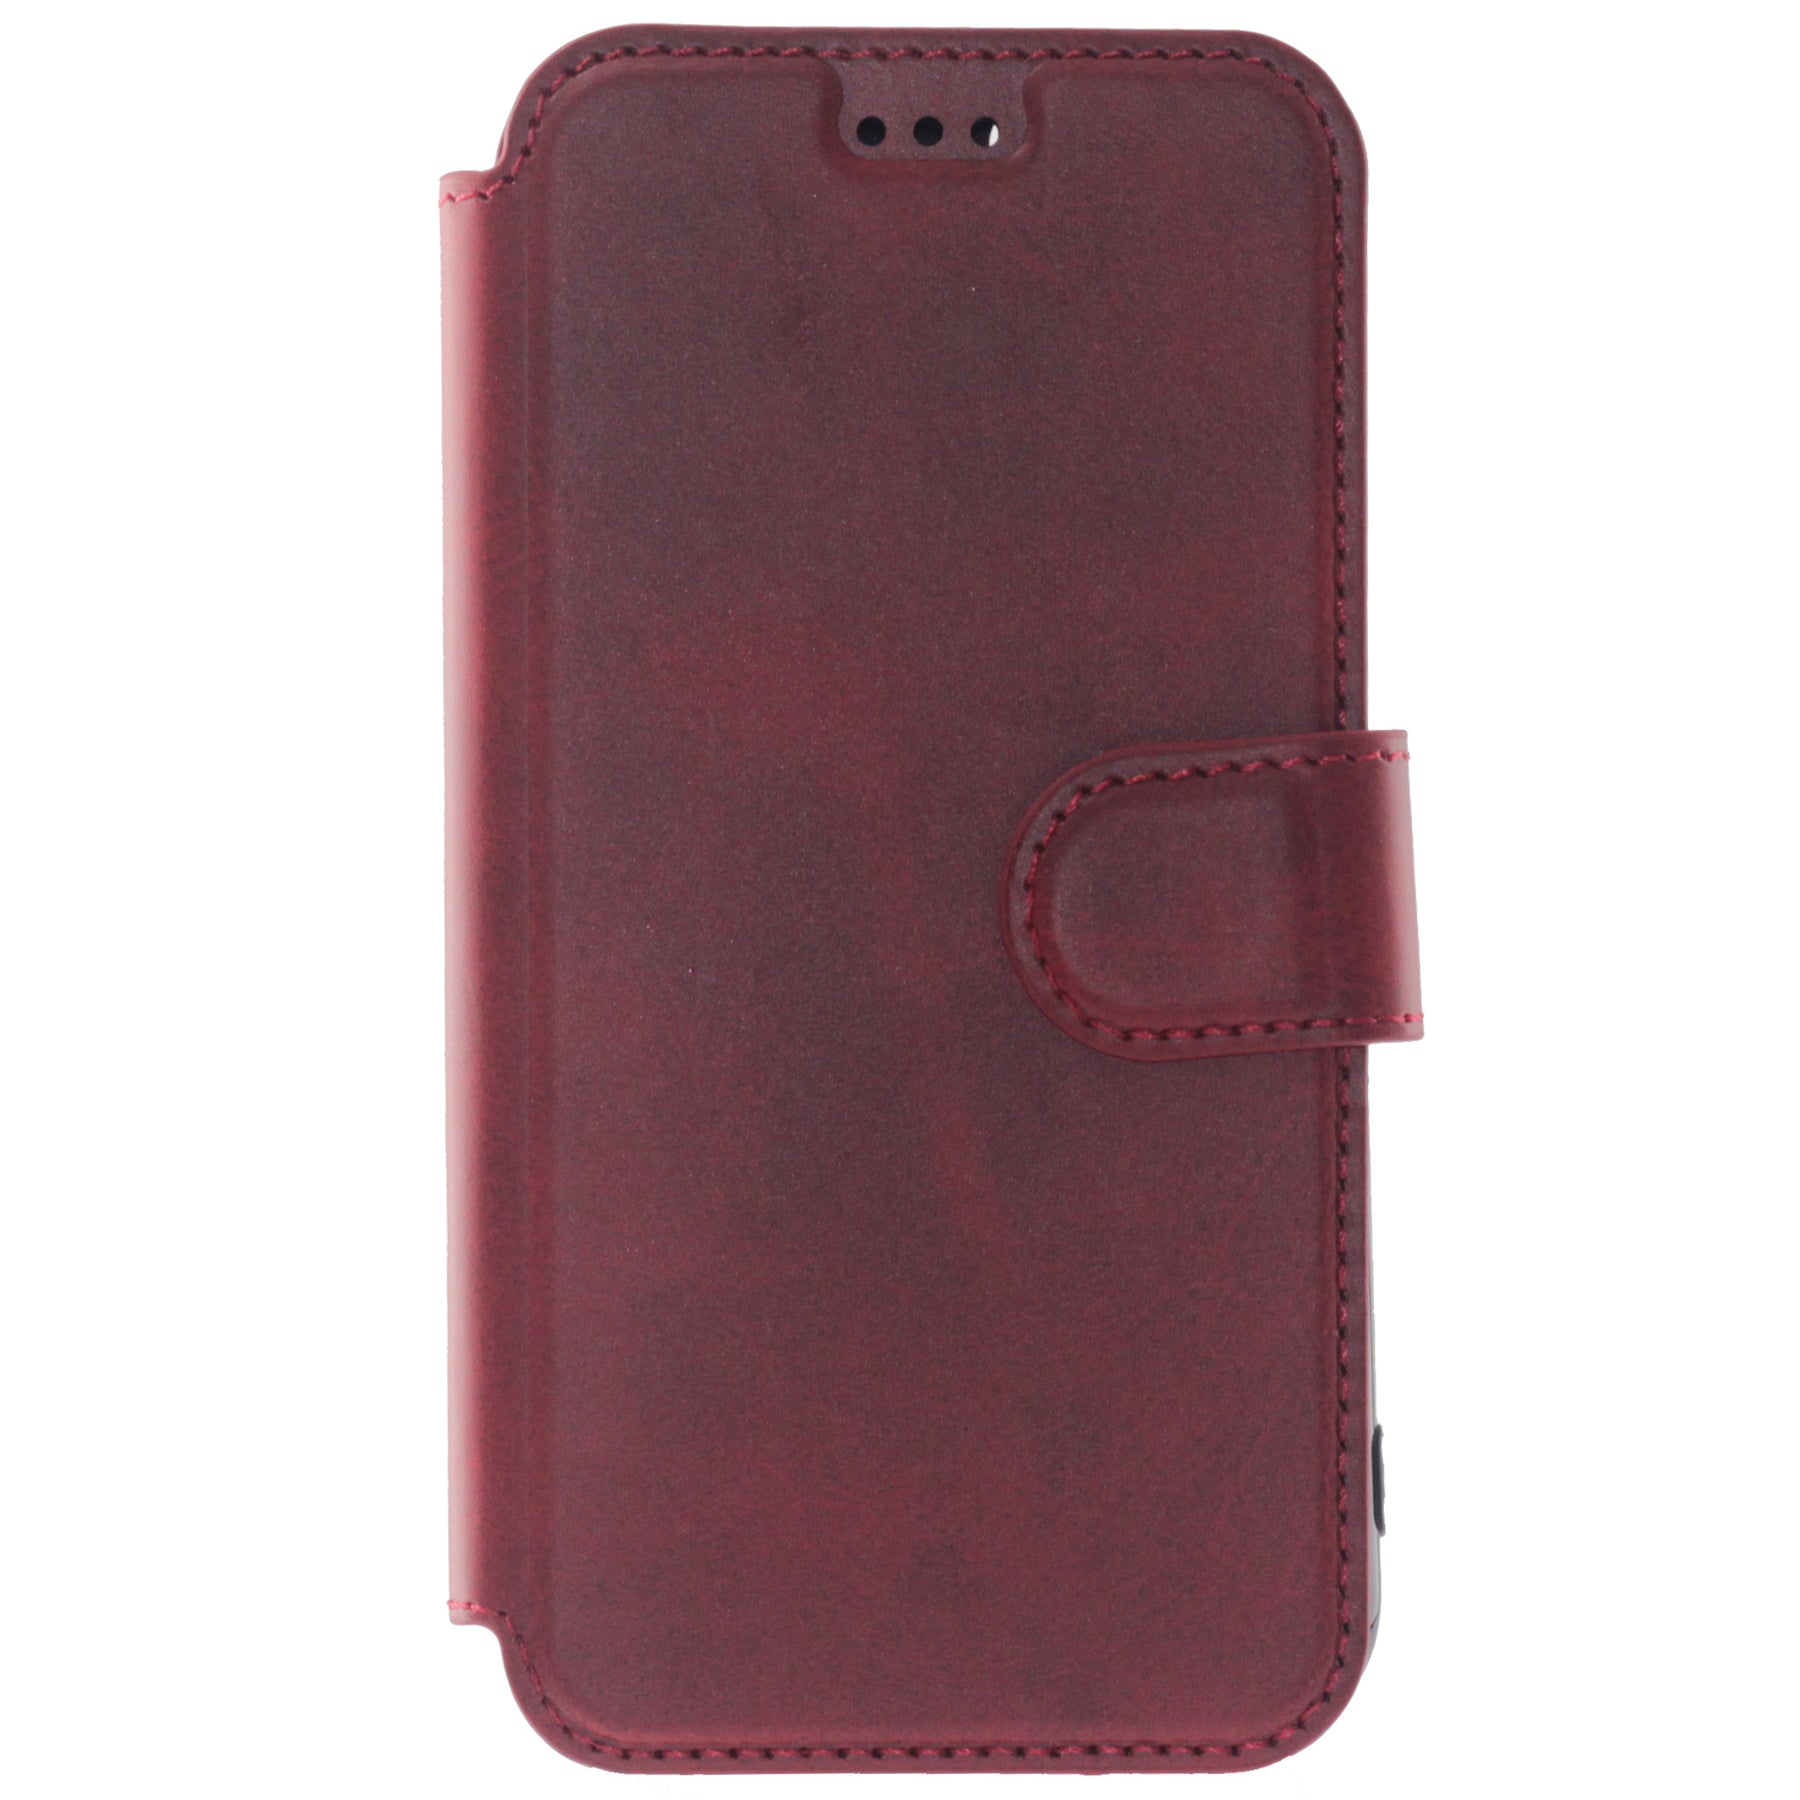 Samsung S10 5G red wallet case